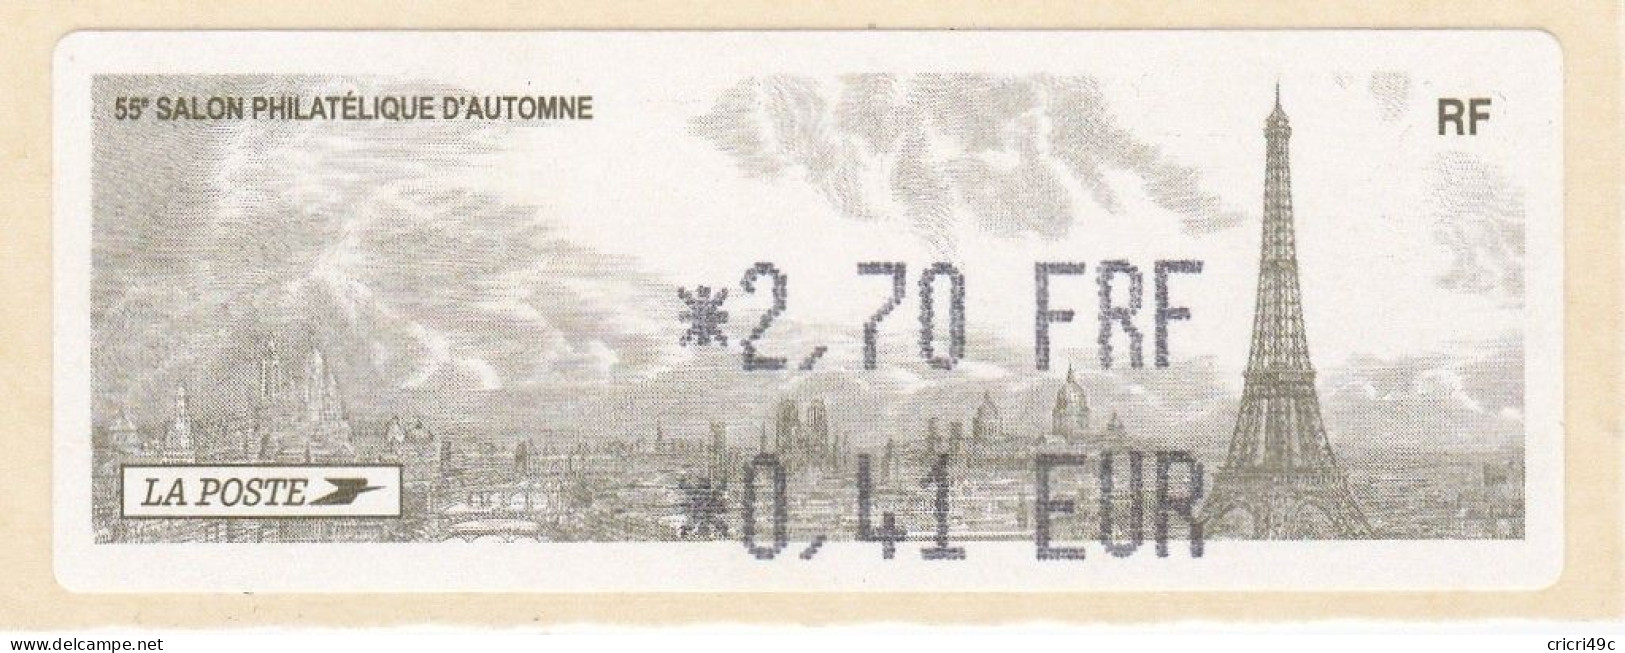 1 ATM LISA. 55è SALON PHILATHELIQUE D"AUTOMNE PARIS  2001. 2.70F  Neufs** - 2010-... Vignettes Illustrées